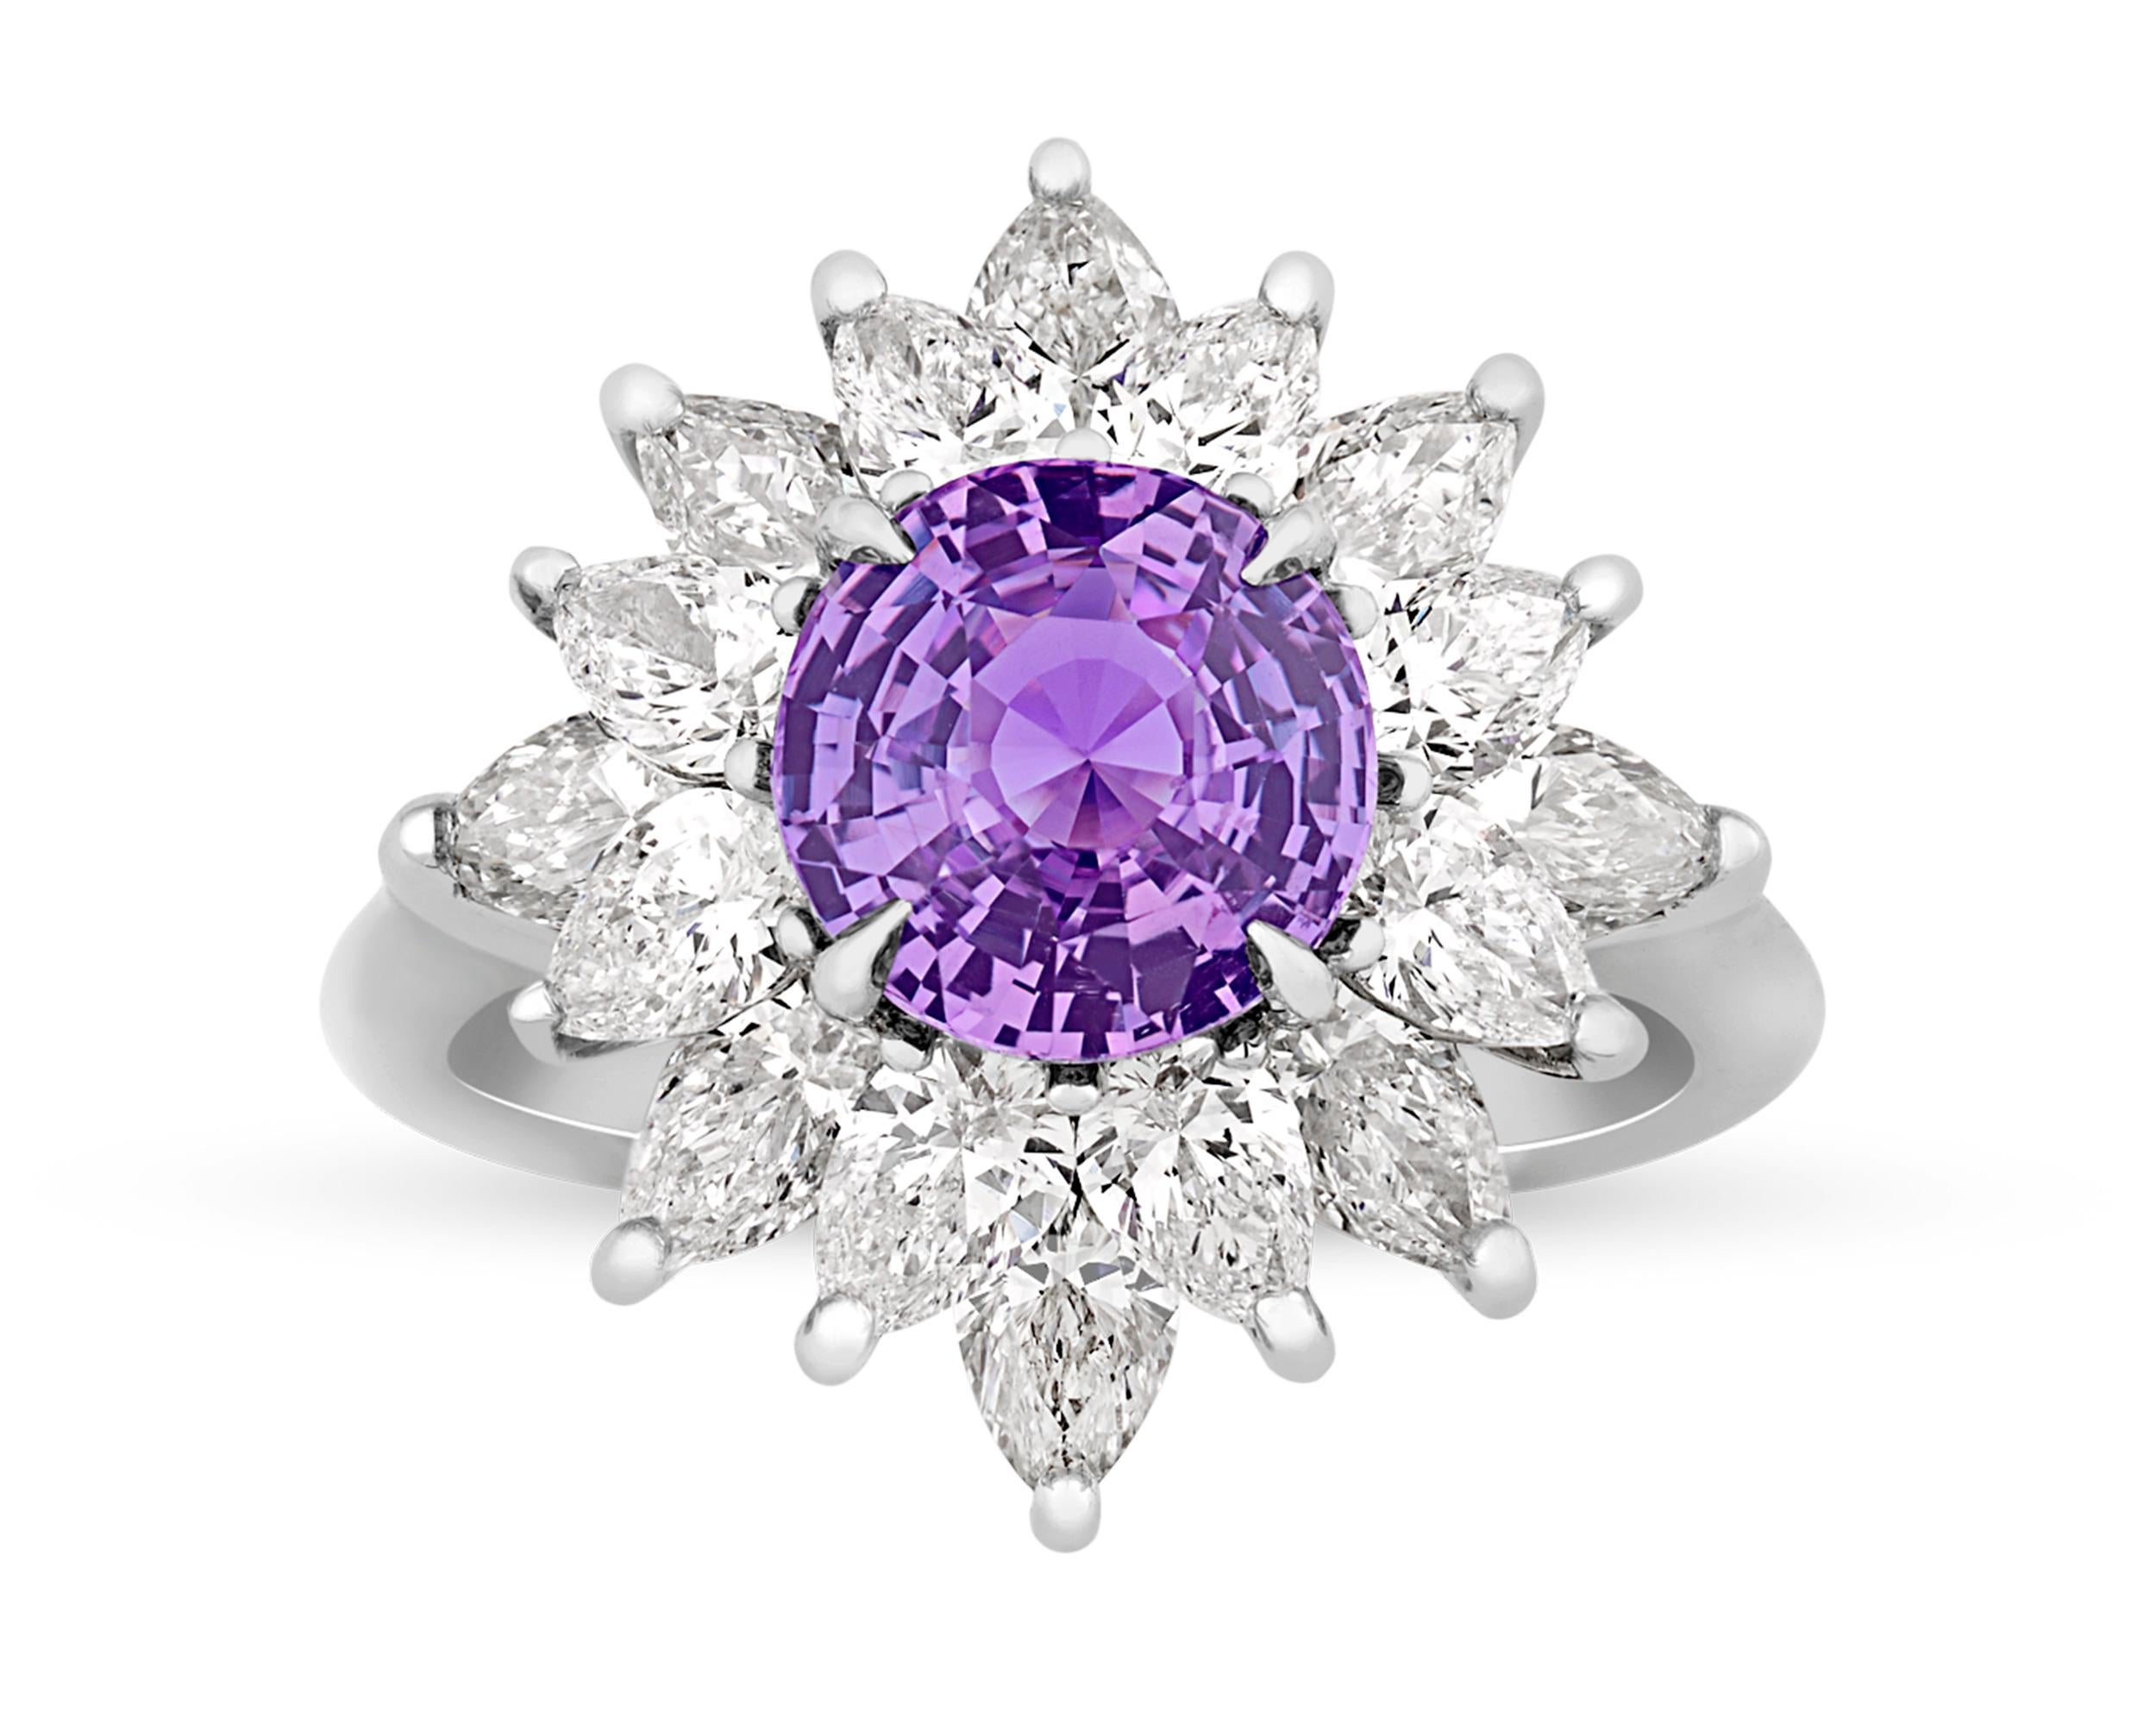 Ein unbehandelter violetter Saphir von 2,53 Karat zeigt in diesem bemerkenswerten Ring seinen berühmten violetten Farbton. Violette Saphire gehören zu den begehrtesten Farbedelsteinen und sind bei Edelsteinsammlern sehr begehrt. Dieses Exemplar ist